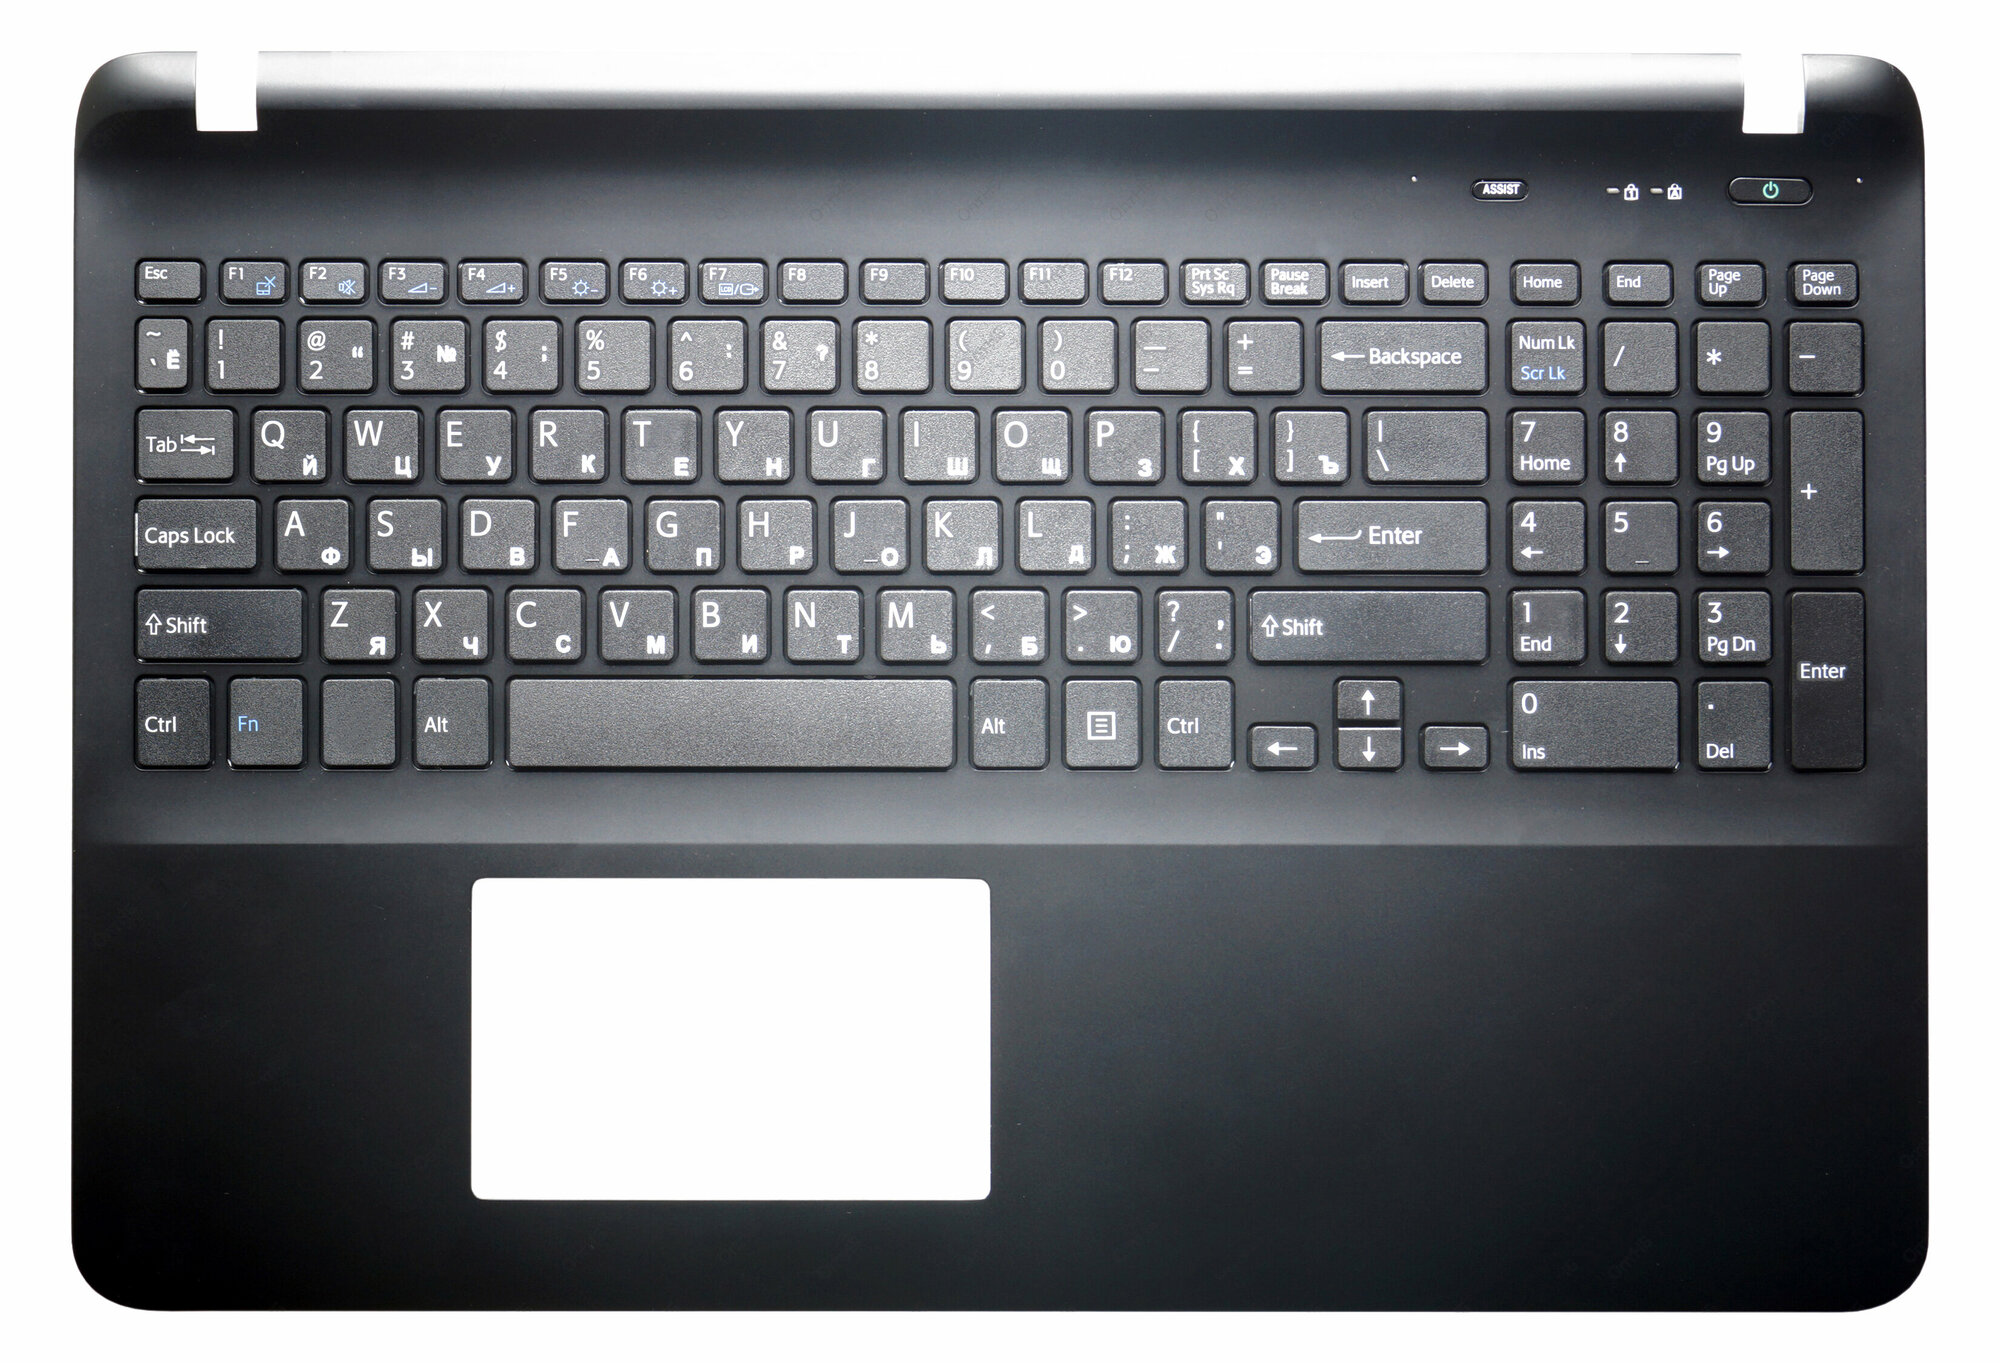 Клавиатура (топ-панель) для ноутбука Sony Vaio SVF15, FIT 15 черная с черным топкейсом